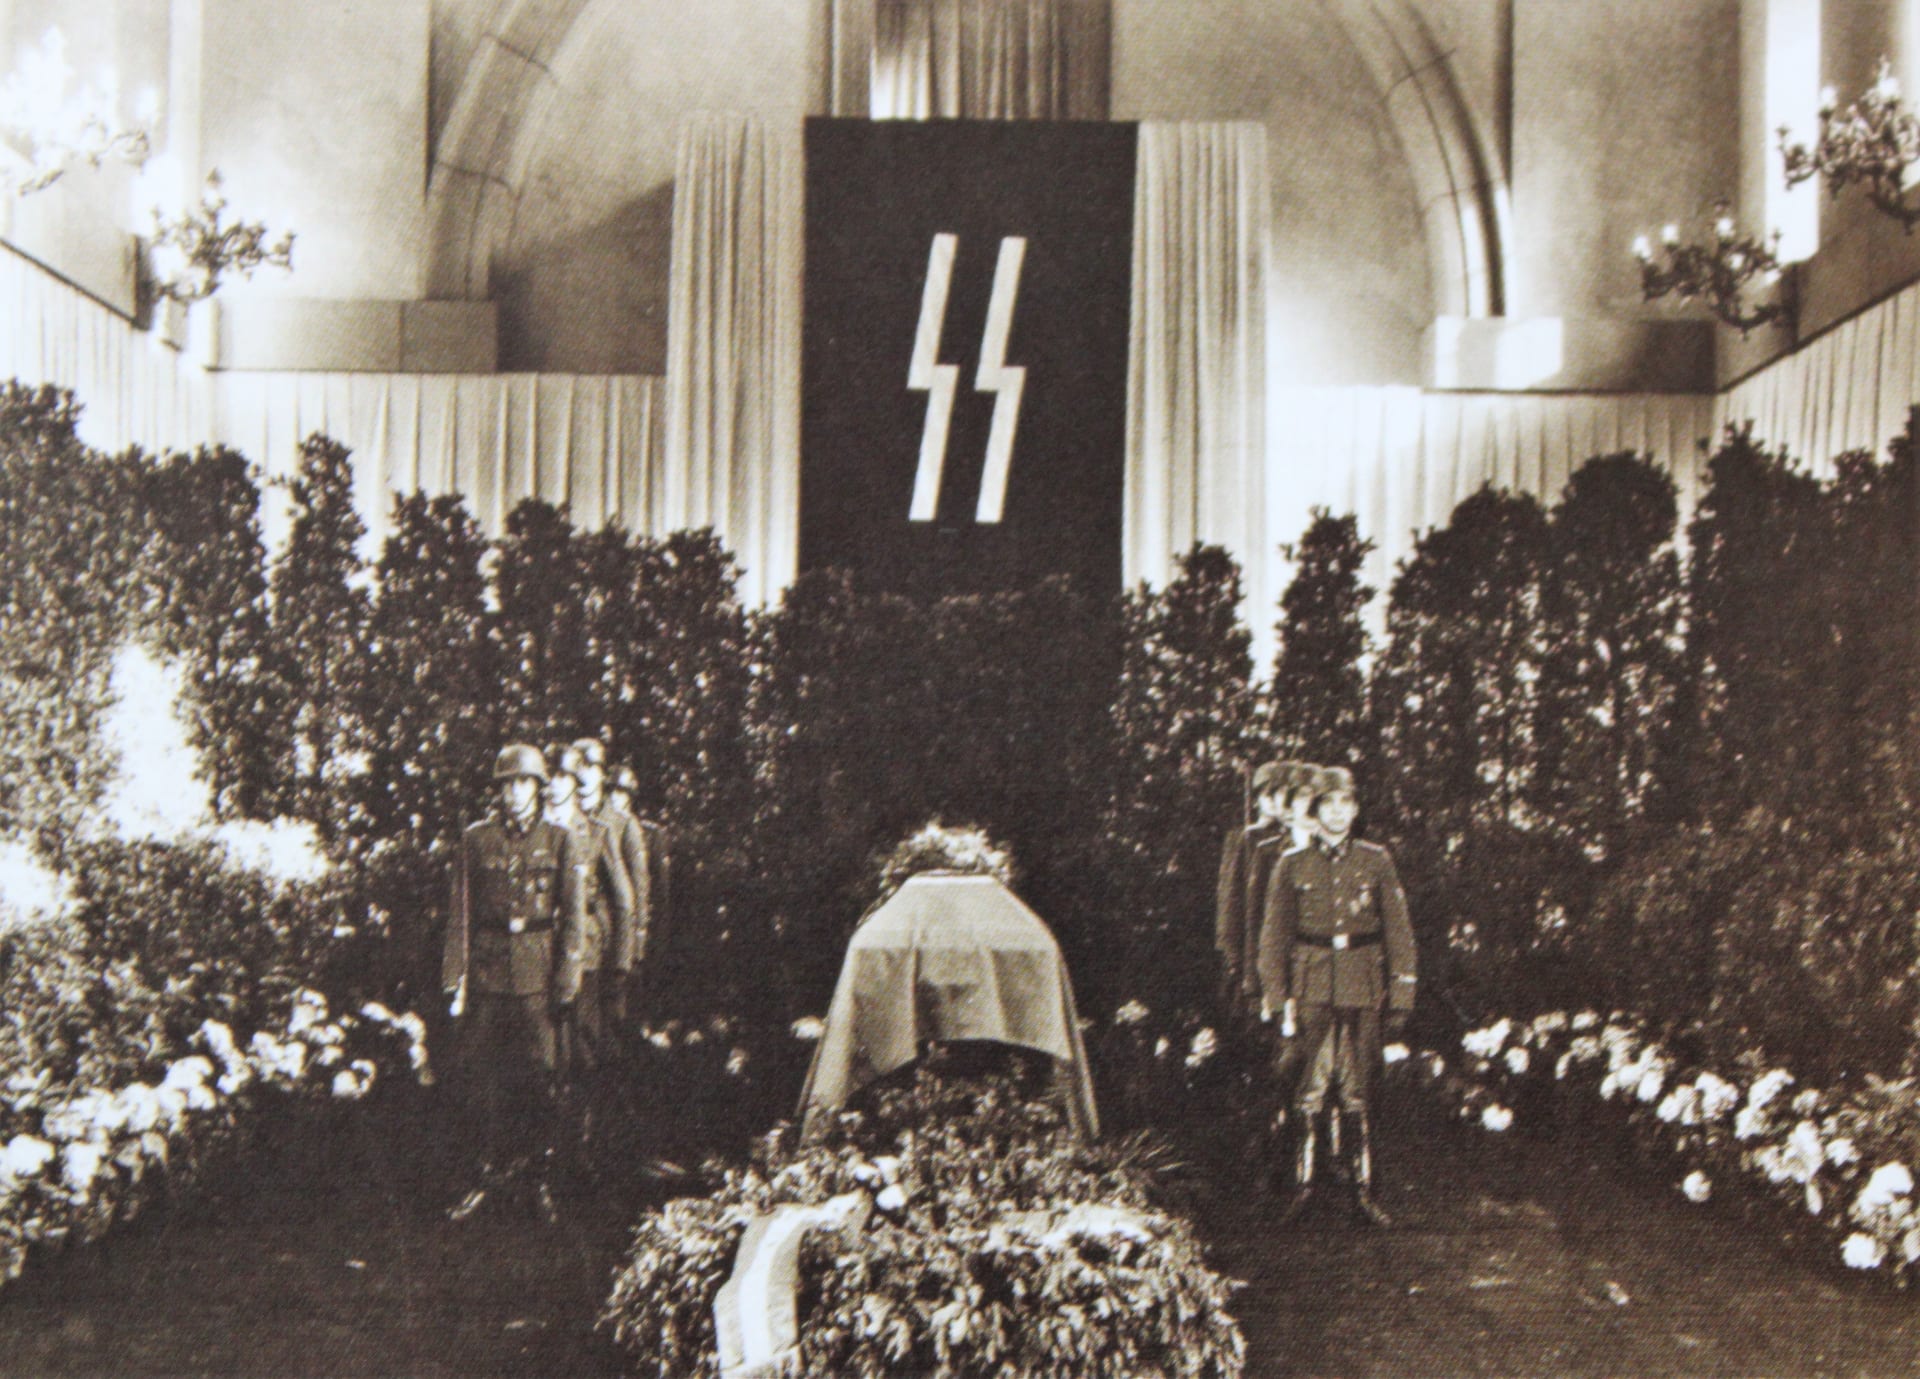 Rakev s ostatky Reinharda Heydricha na Pražském hradě. Zdroj: archiv Jana B. Uhlíře, publikace Protektorát Čechy a Morava 1939-1942